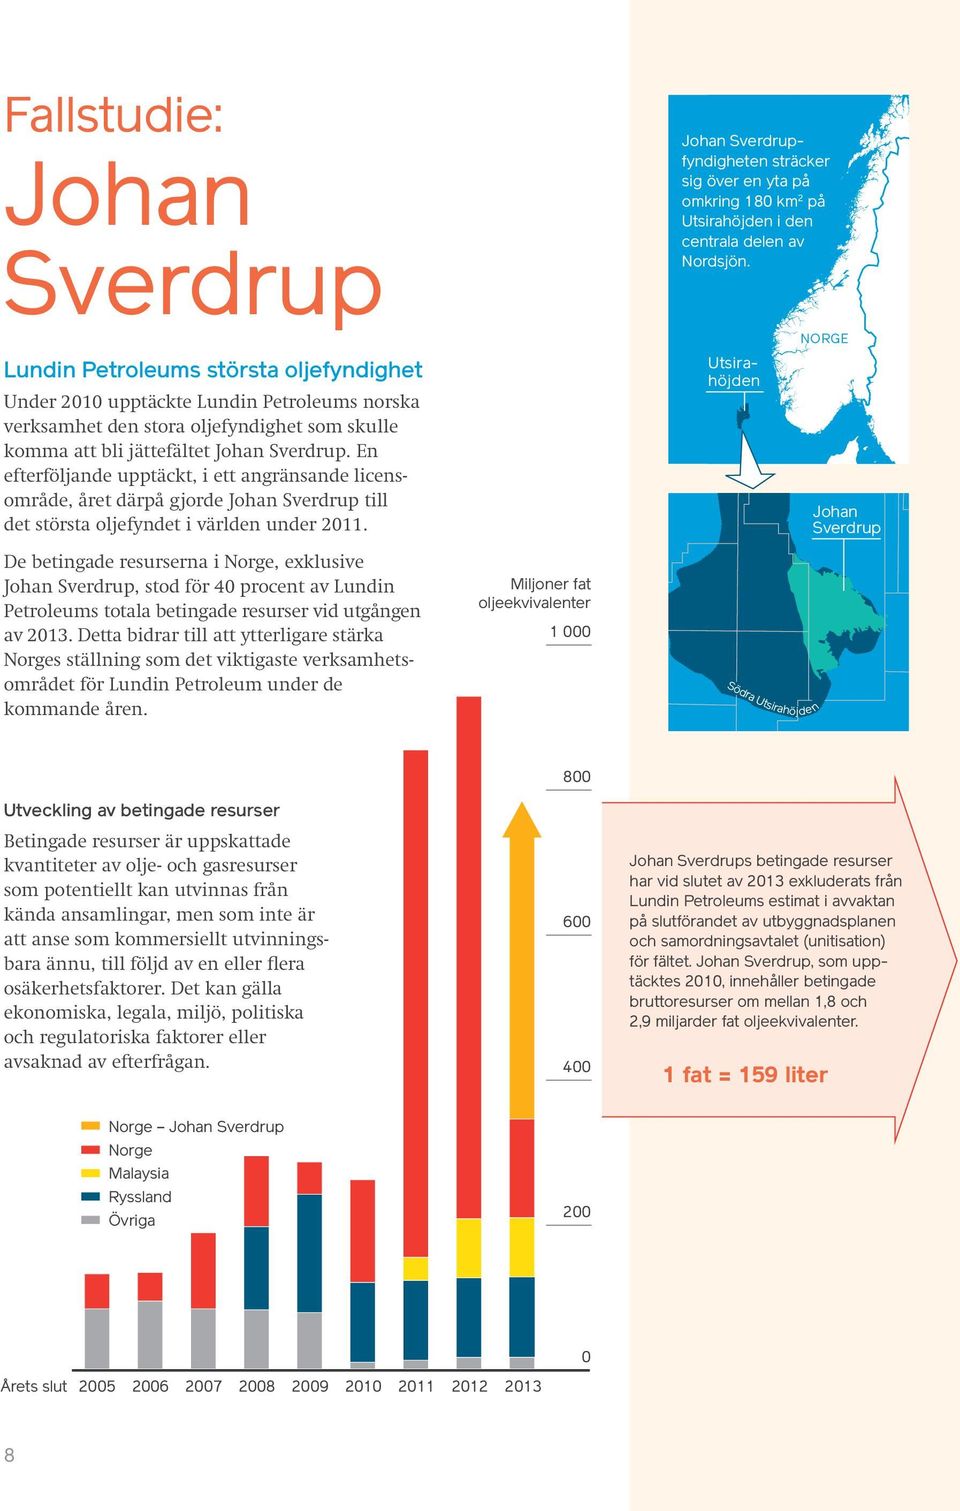 En efterföljande upptäckt, i ett angränsande licensområde, året därpå gjorde Johan Sverdrup till det största oljefyndet i världen under 2011.